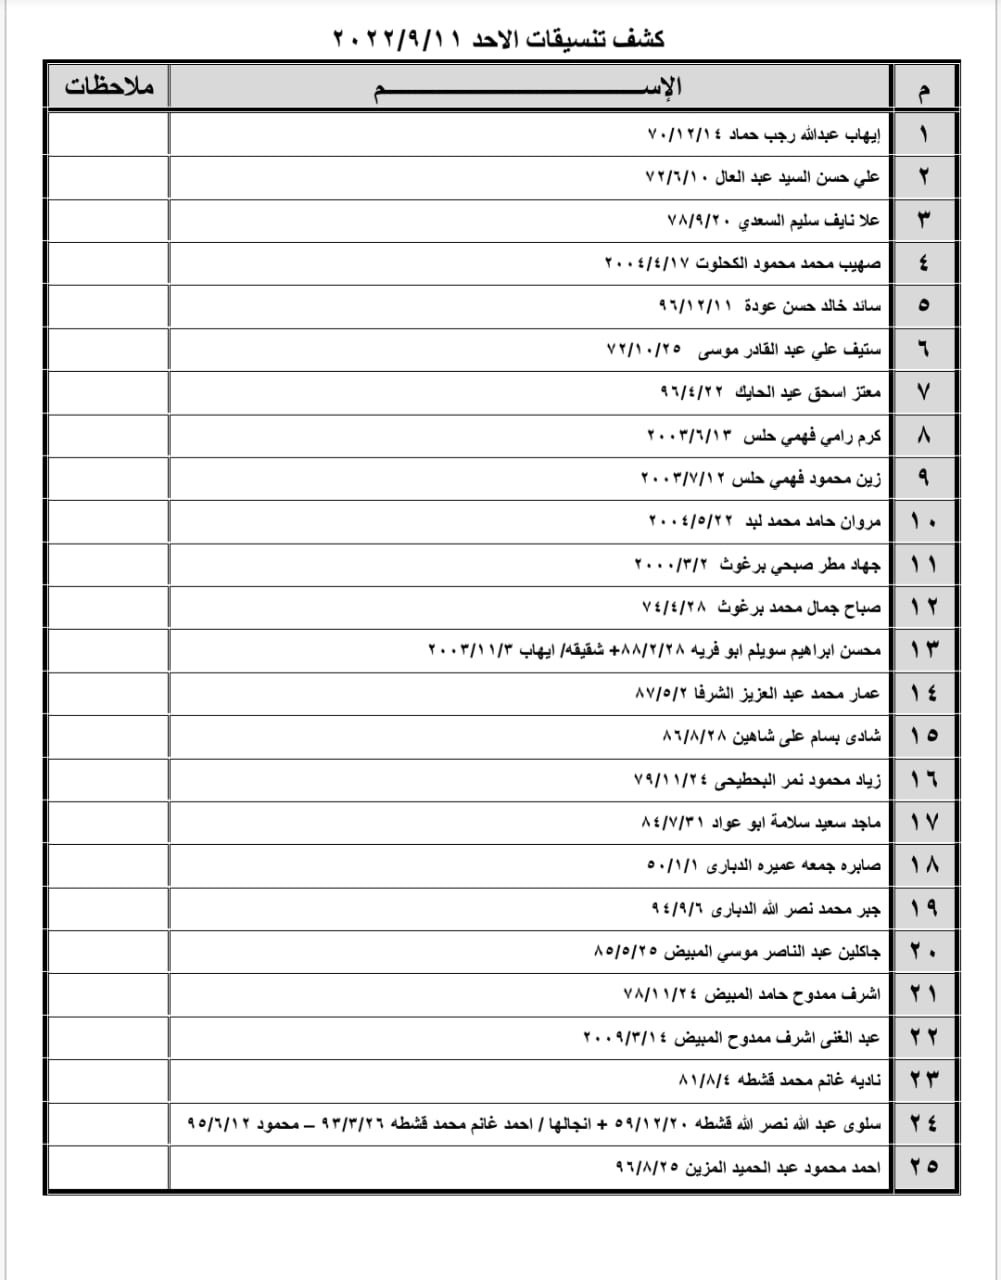 بالأسماء: كشف "تنسيقات مصرية" للسفر عبر معبر رفح الأحد 11 سبتمبر 2022